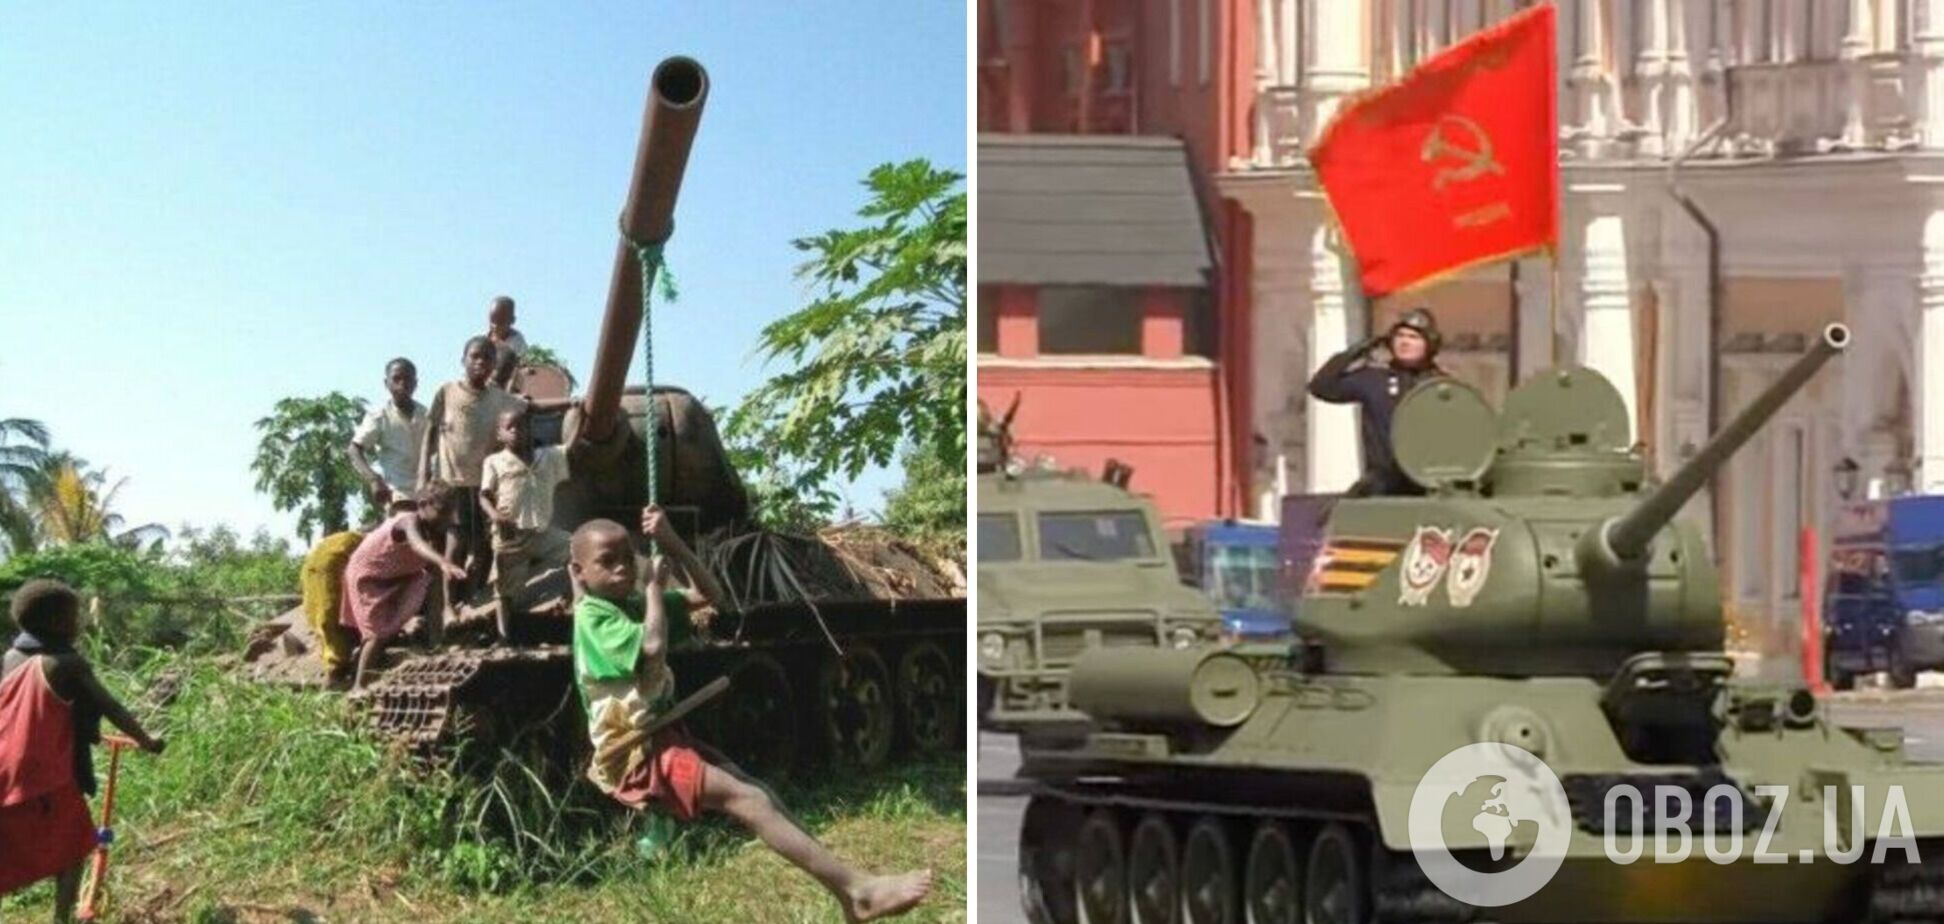 Привезли из Лаоса: всплыли подробности о 'музейном' танке, который показали на параде в Москве